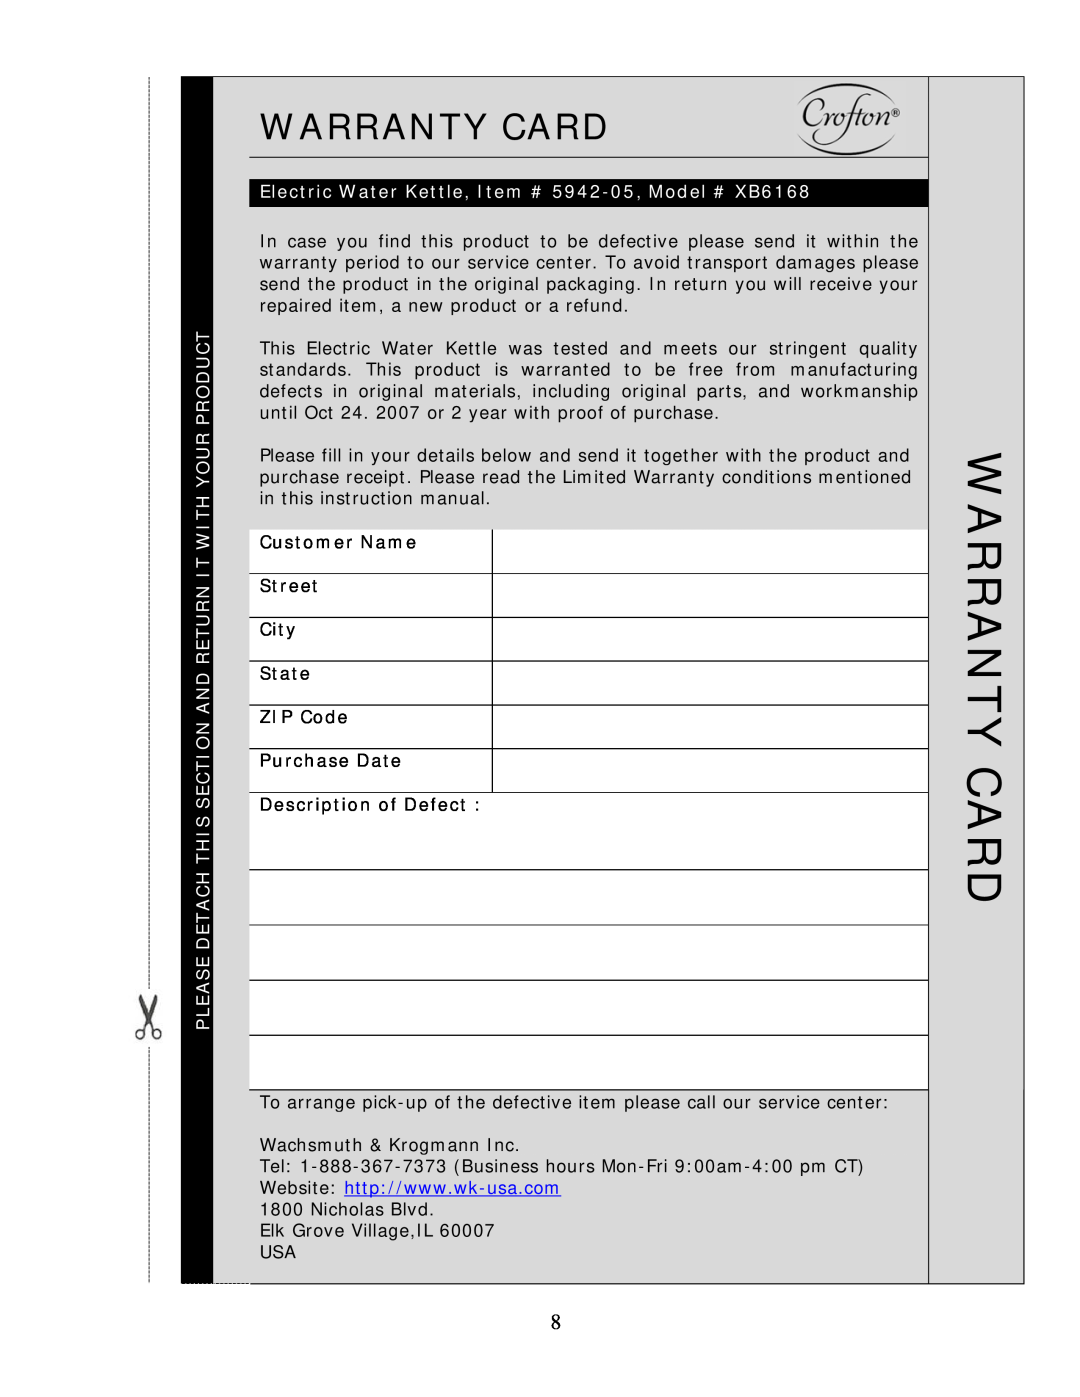 Wachsmuth & Krogmann XB6168 manual Warranty Card 